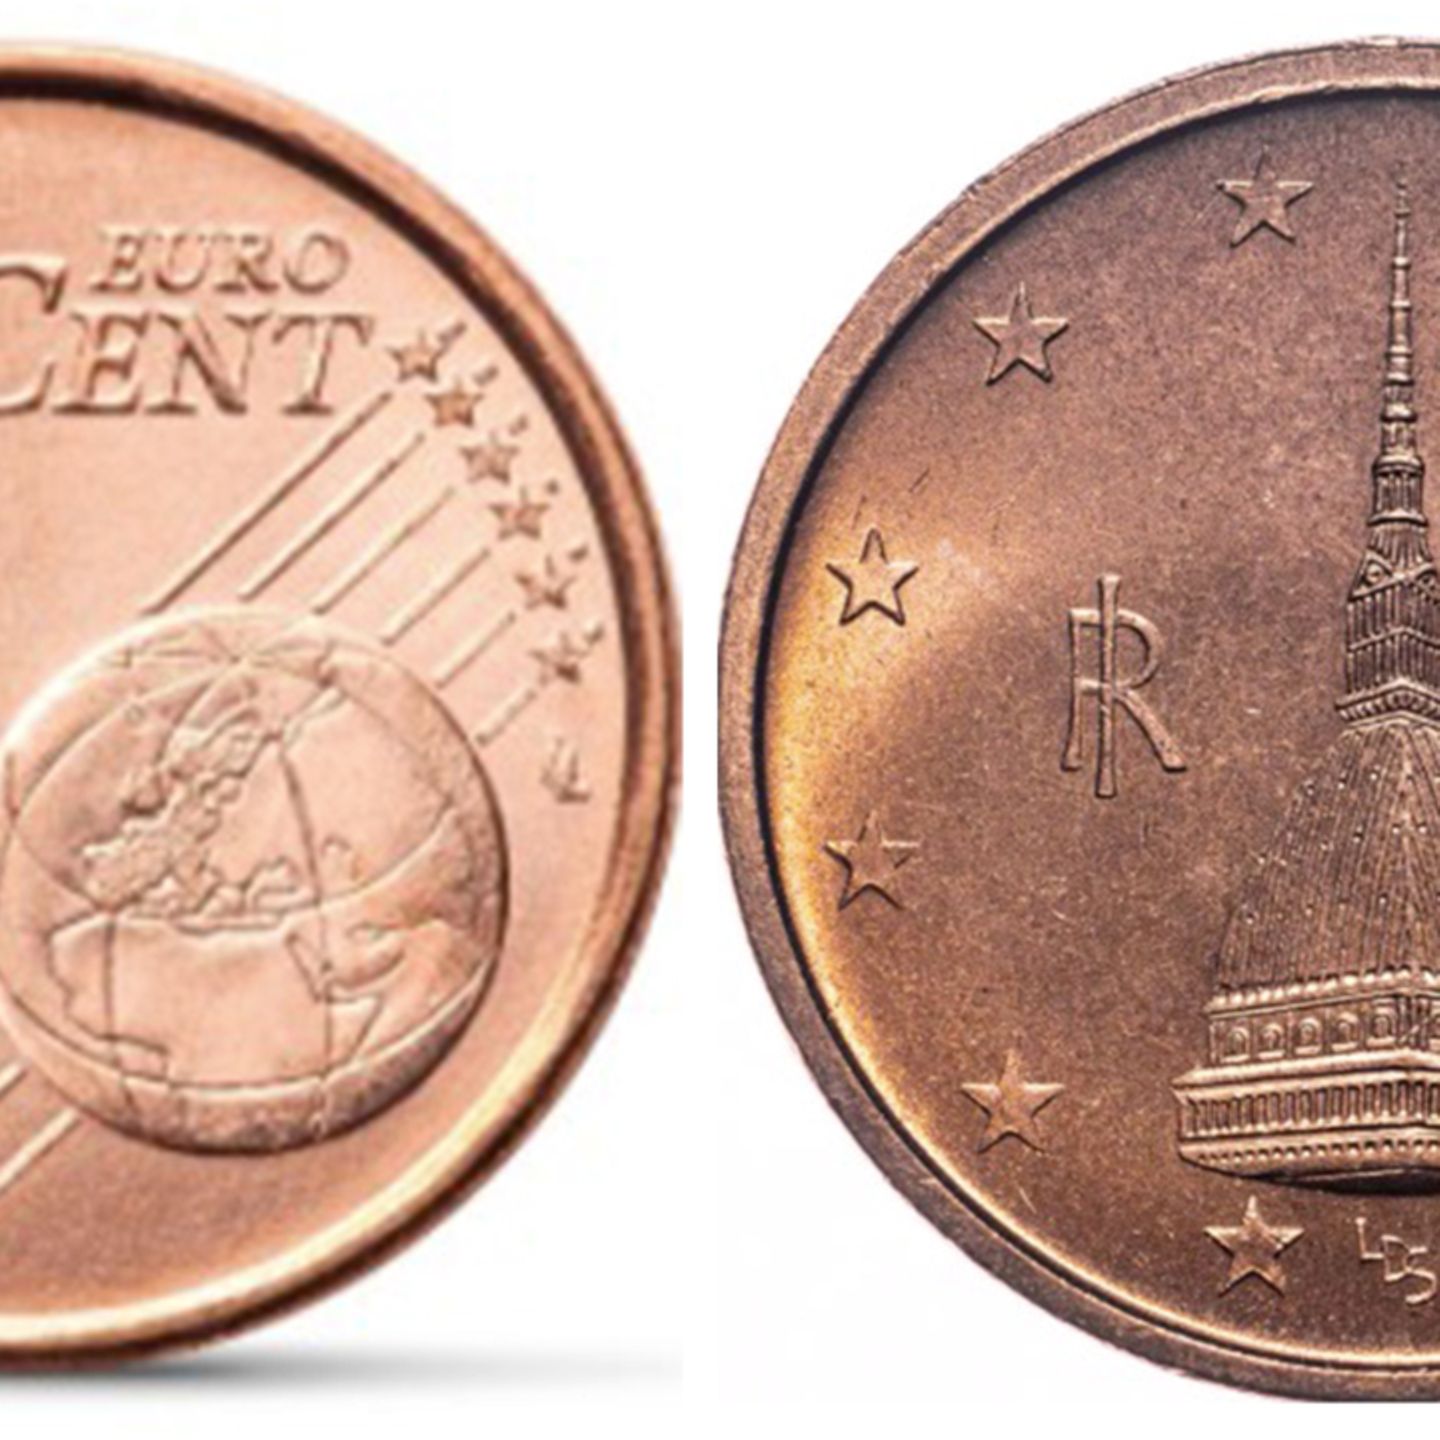 Diese 1-Eurocent-Münze ist ein kleines Vermögen wert: Besitzen Sie